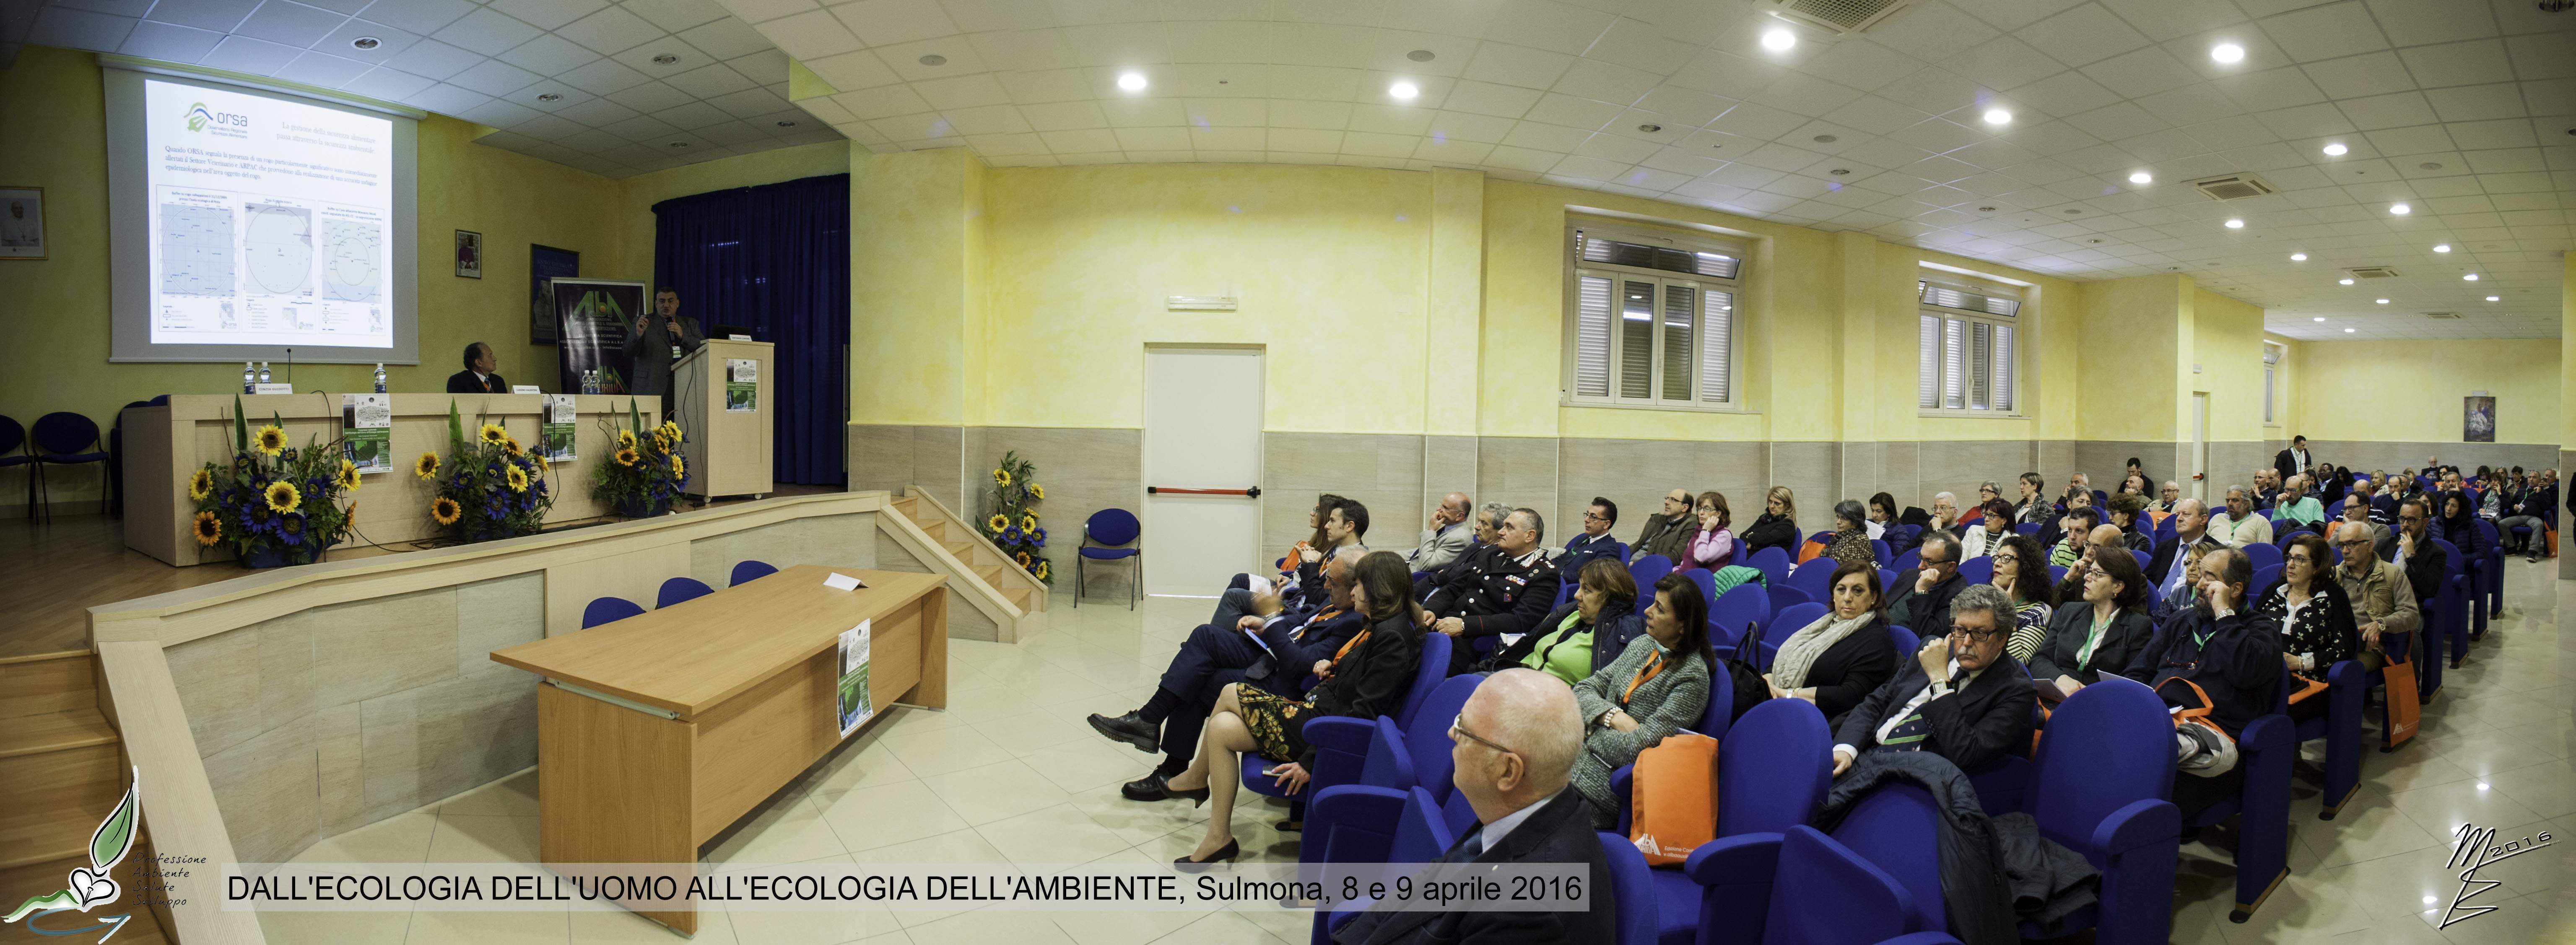 Congresso Etica, Ambiente e Fede, Sulmona